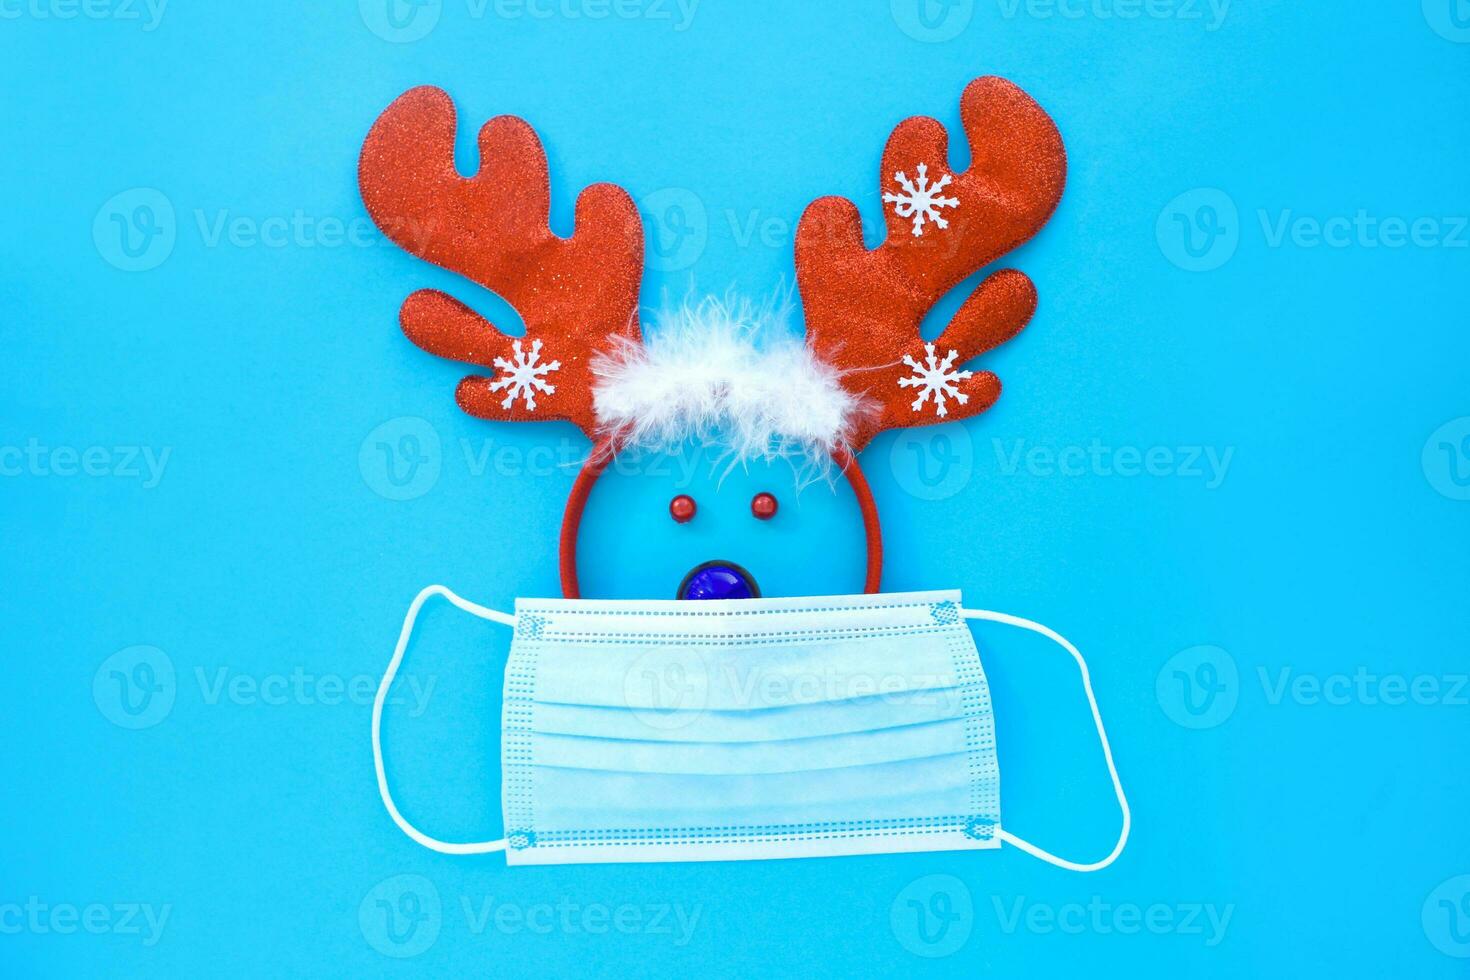 rådjur ansikte tillverkad från en rådjur hjorthorn ring och en jul leksak i en medicinsk mask på en blå bakgrund. foto